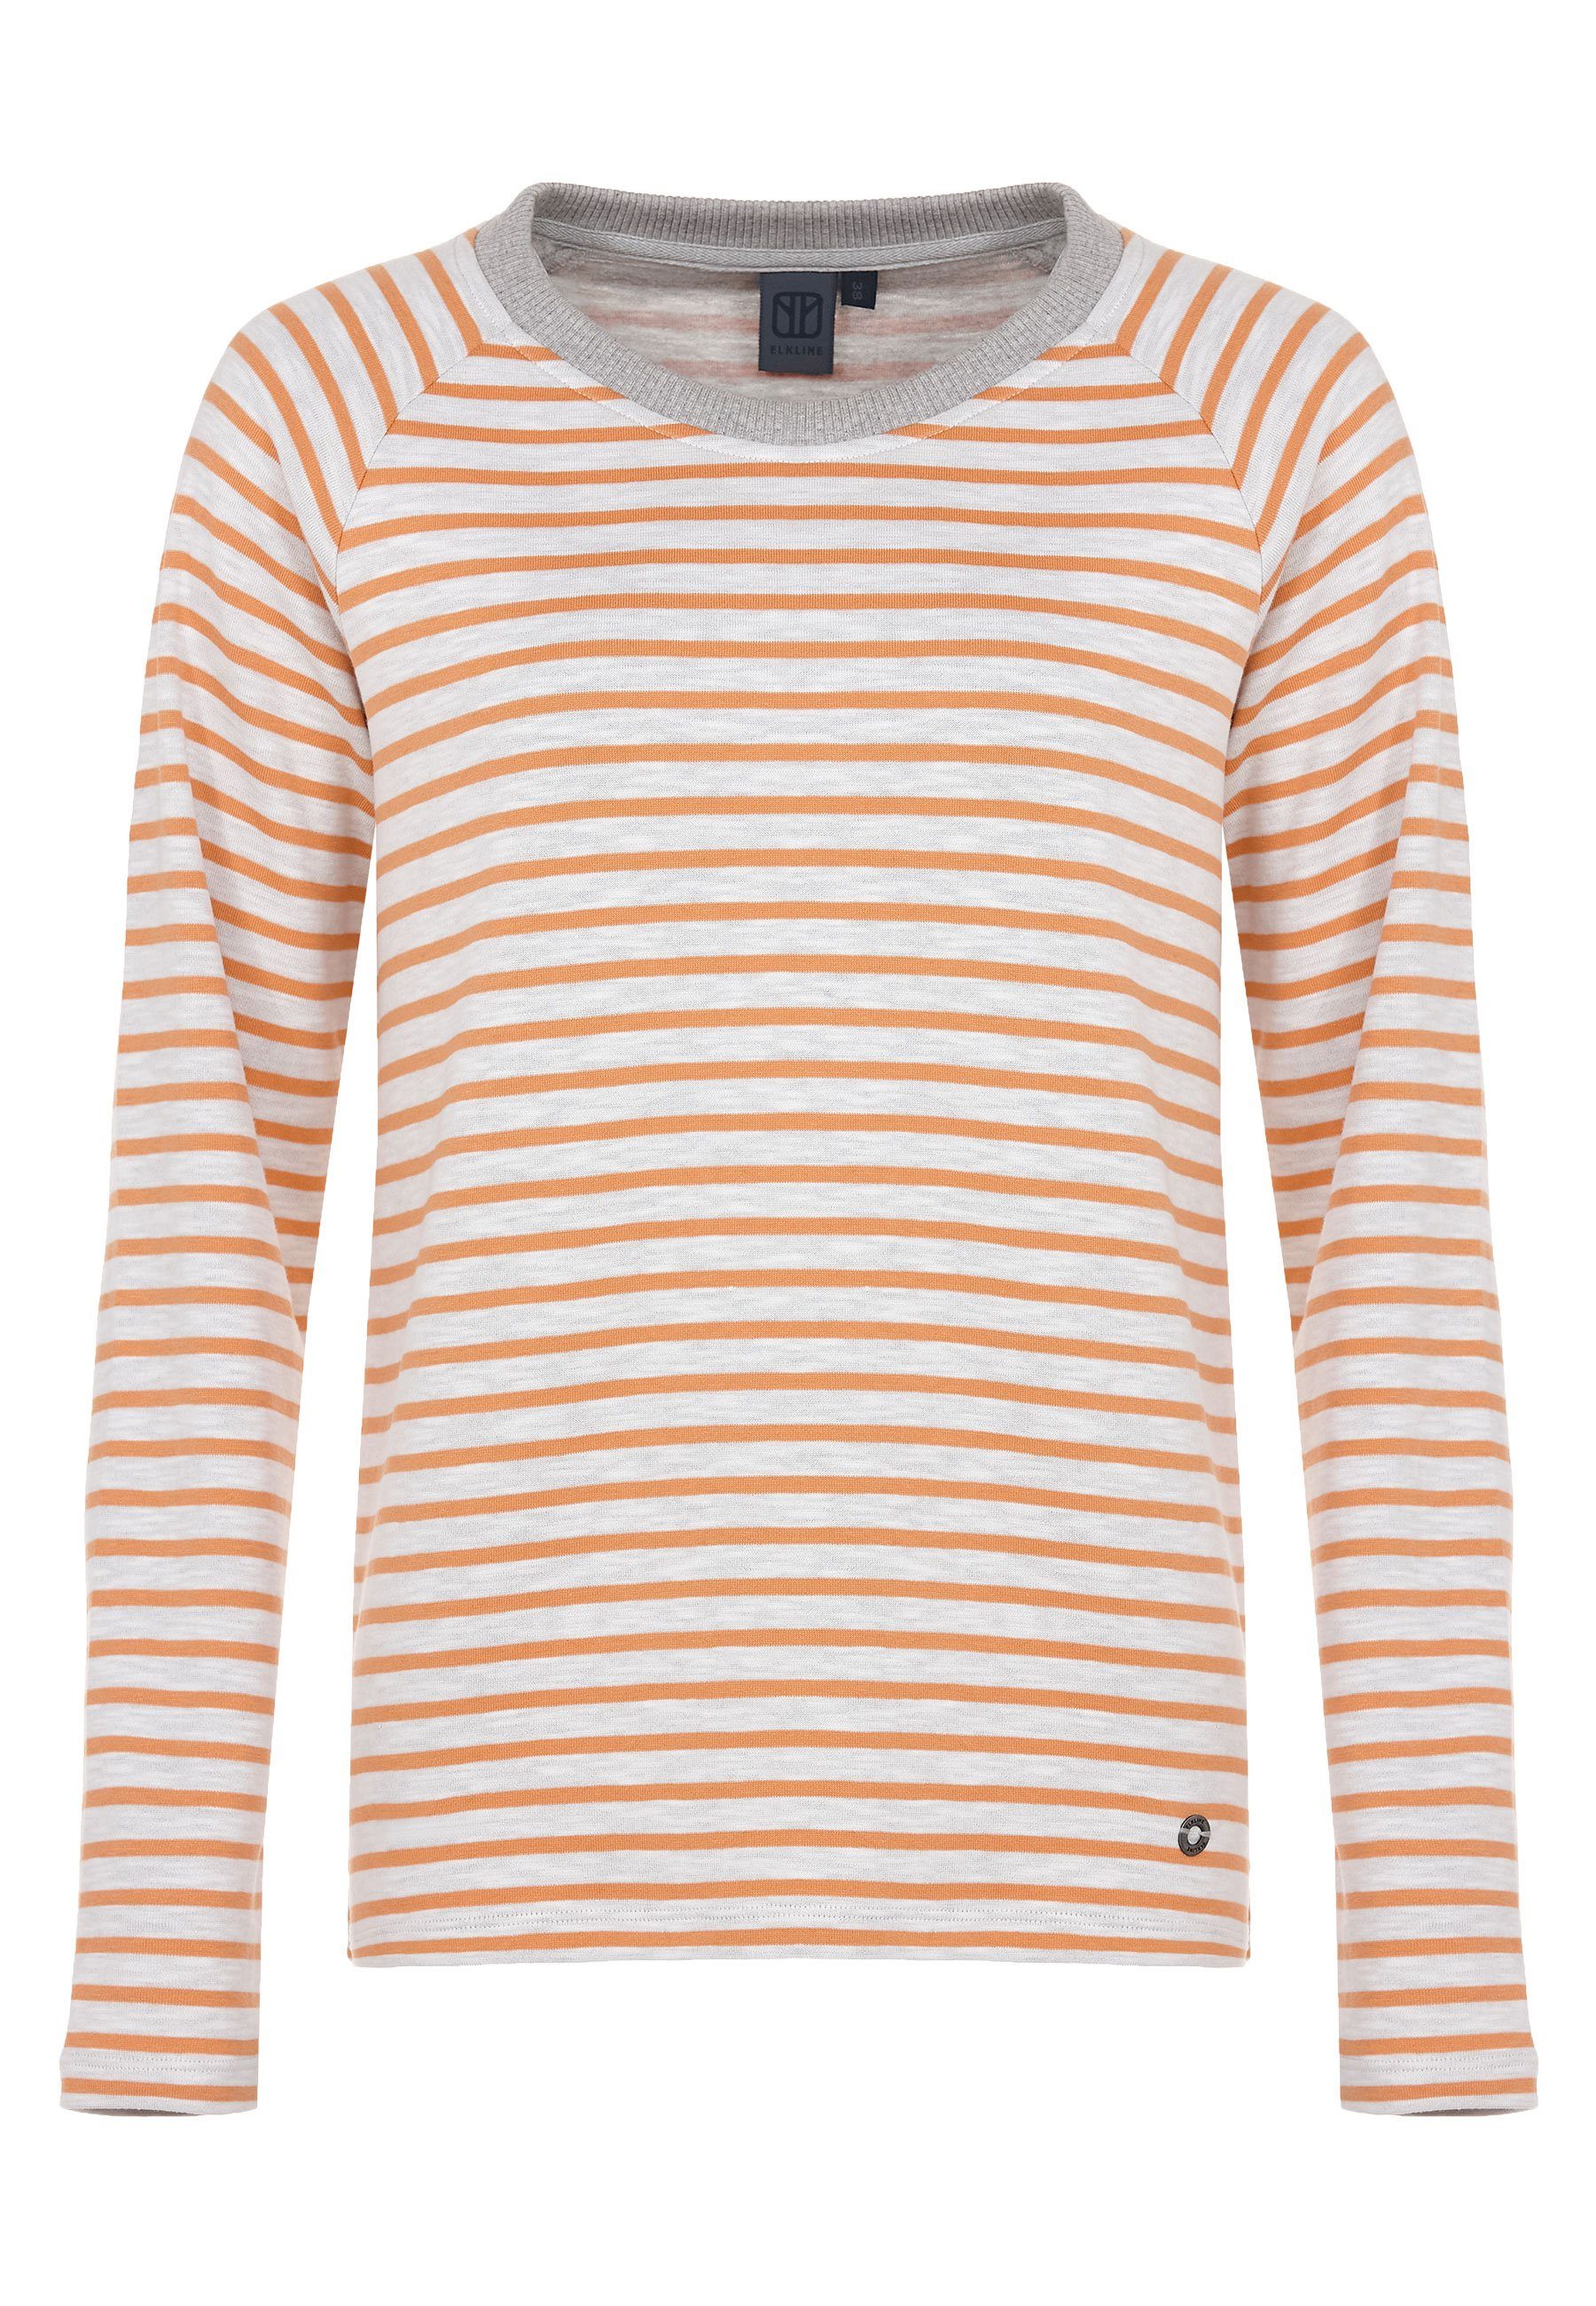 Halsausschnitt weiter Elkline soft orange Streifen - Sweatshirt Tomorrow white